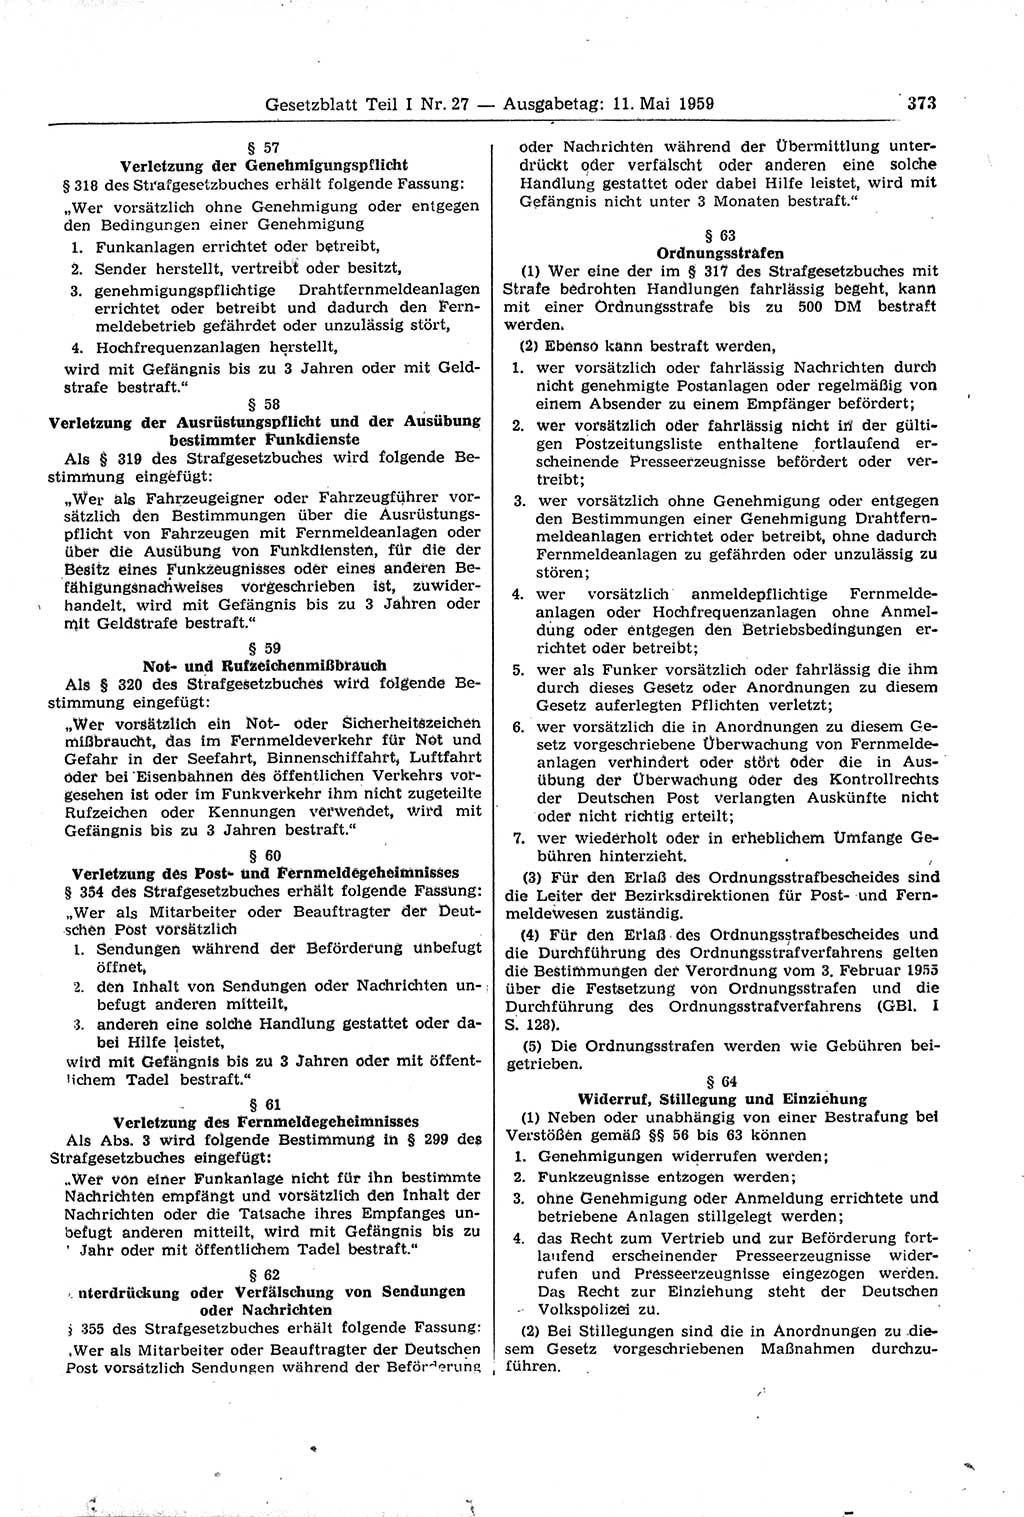 Gesetzblatt (GBl.) der Deutschen Demokratischen Republik (DDR) Teil Ⅰ 1959, Seite 373 (GBl. DDR Ⅰ 1959, S. 373)